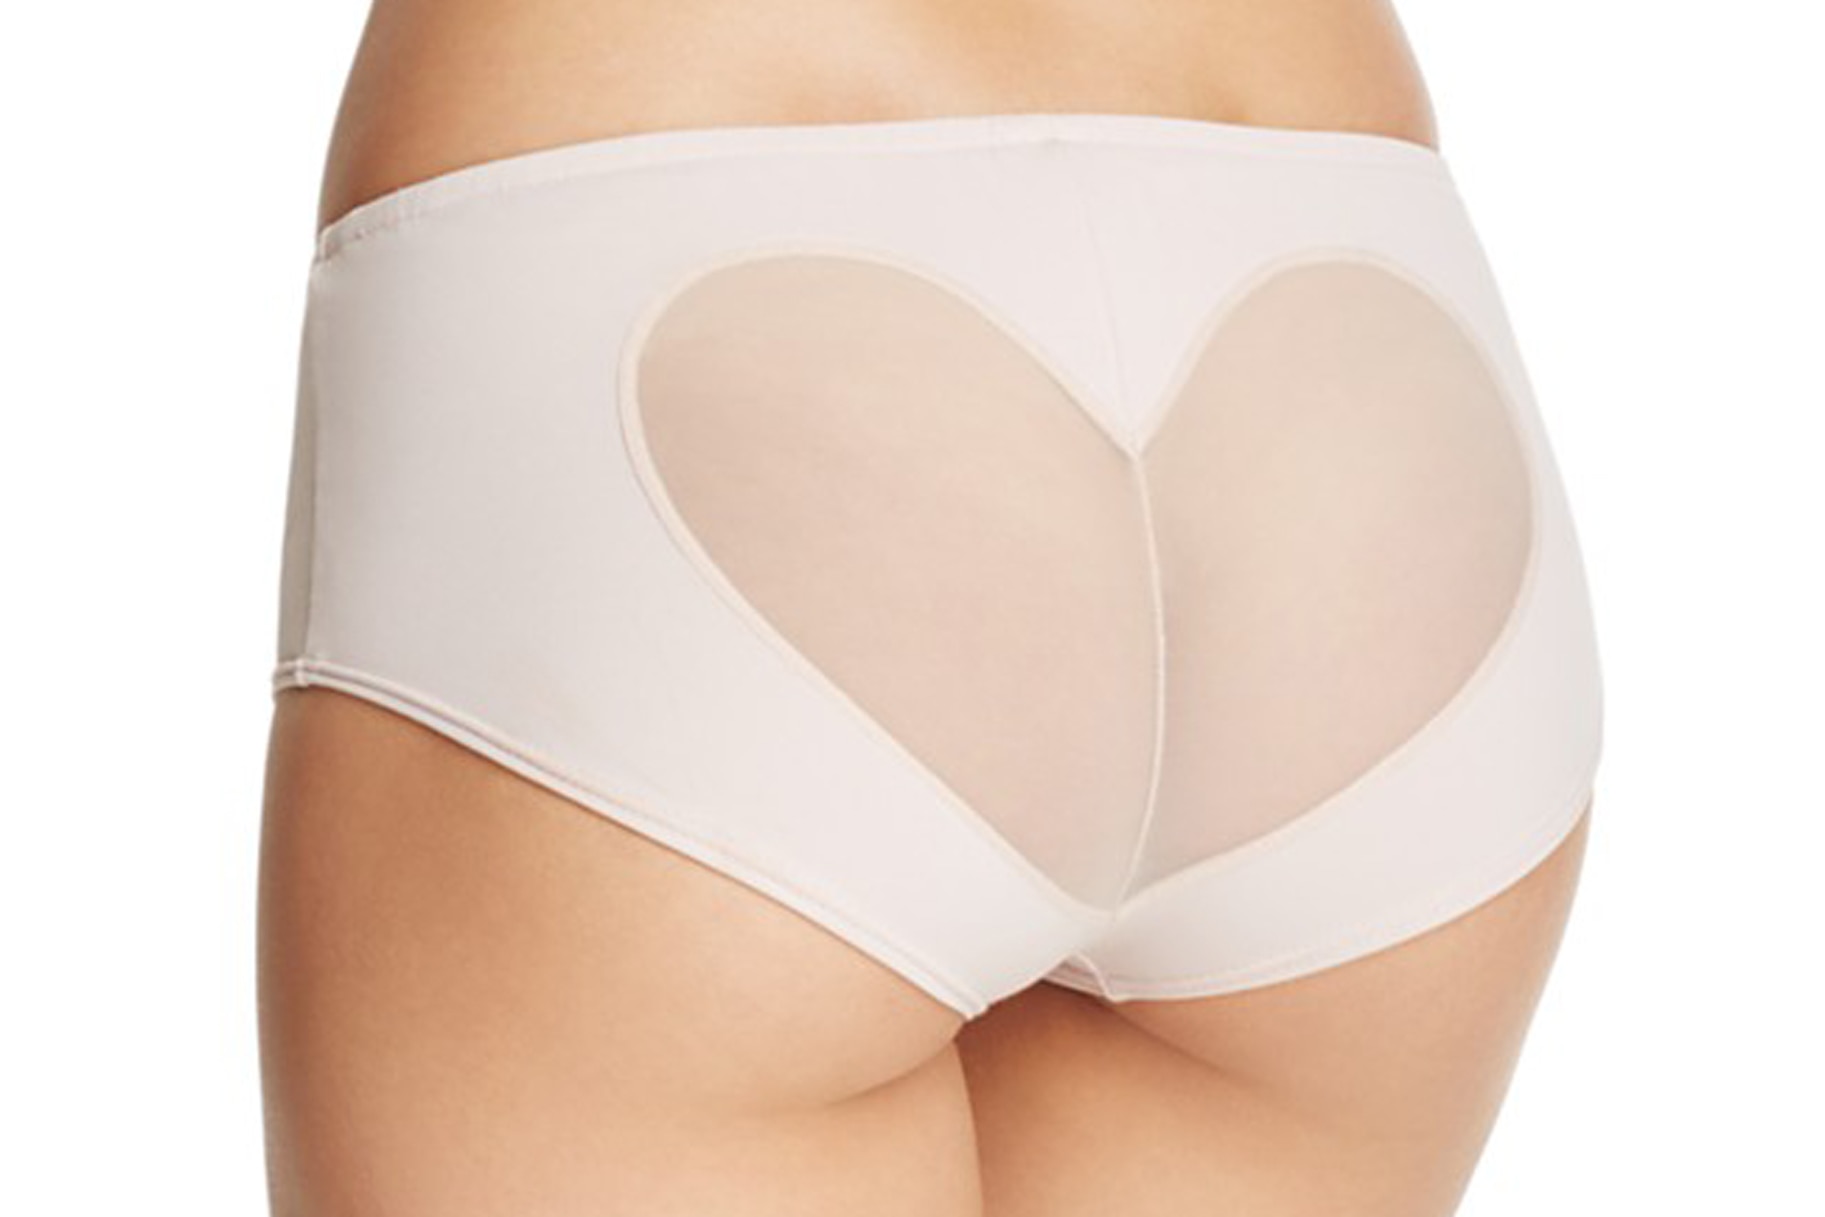 Show Off Your Bum! Sheer Panties Are In – Bra Doctor's Blog